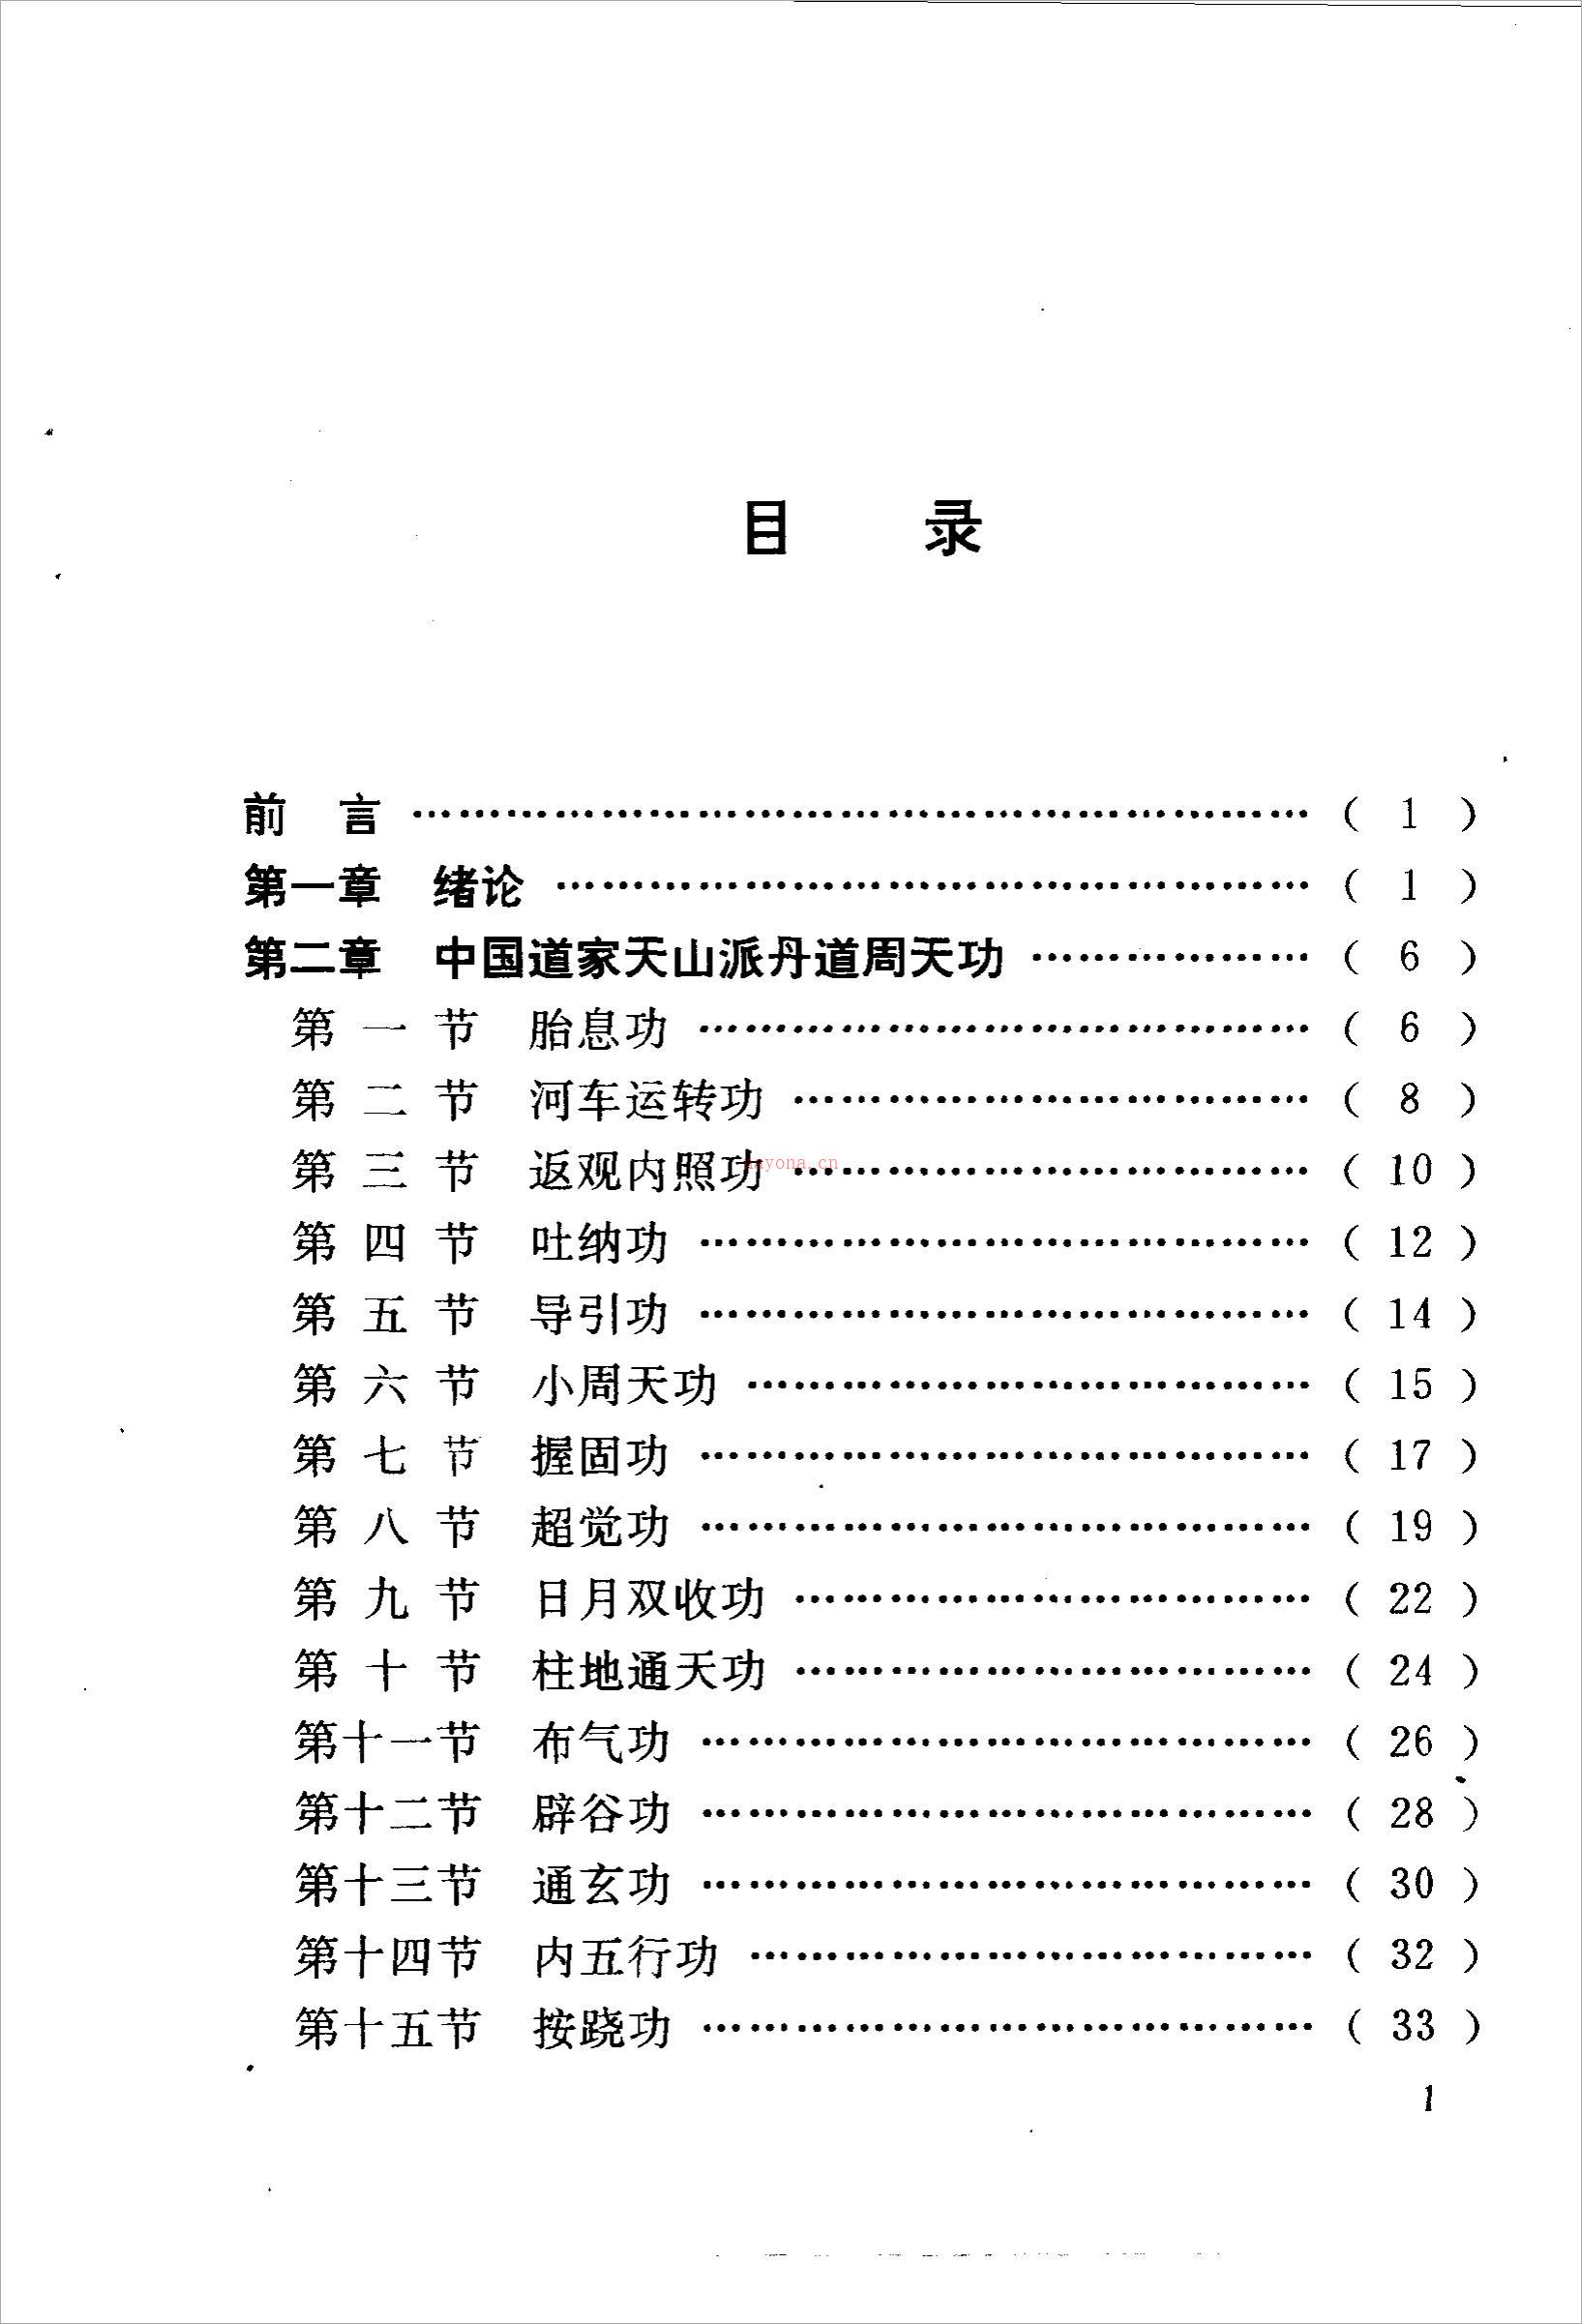 丹道周天功(完整版)222页.pdf 百度网盘资源